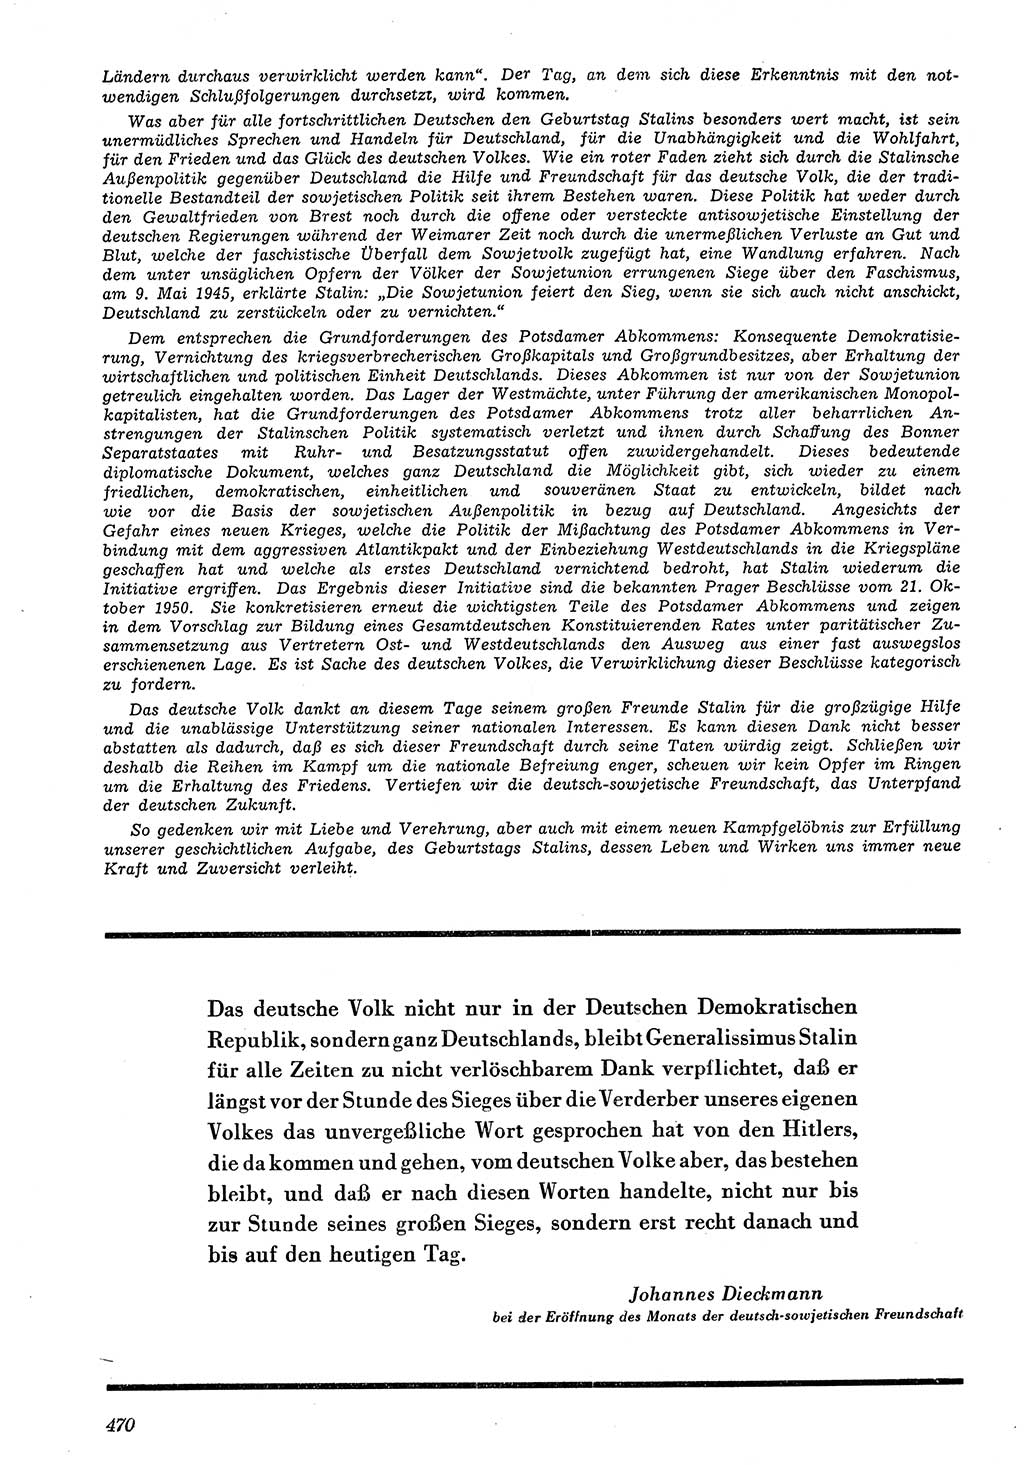 Neue Justiz (NJ), Zeitschrift für Recht und Rechtswissenschaft [Deutsche Demokratische Republik (DDR)], 4. Jahrgang 1950, Seite 470 (NJ DDR 1950, S. 470)